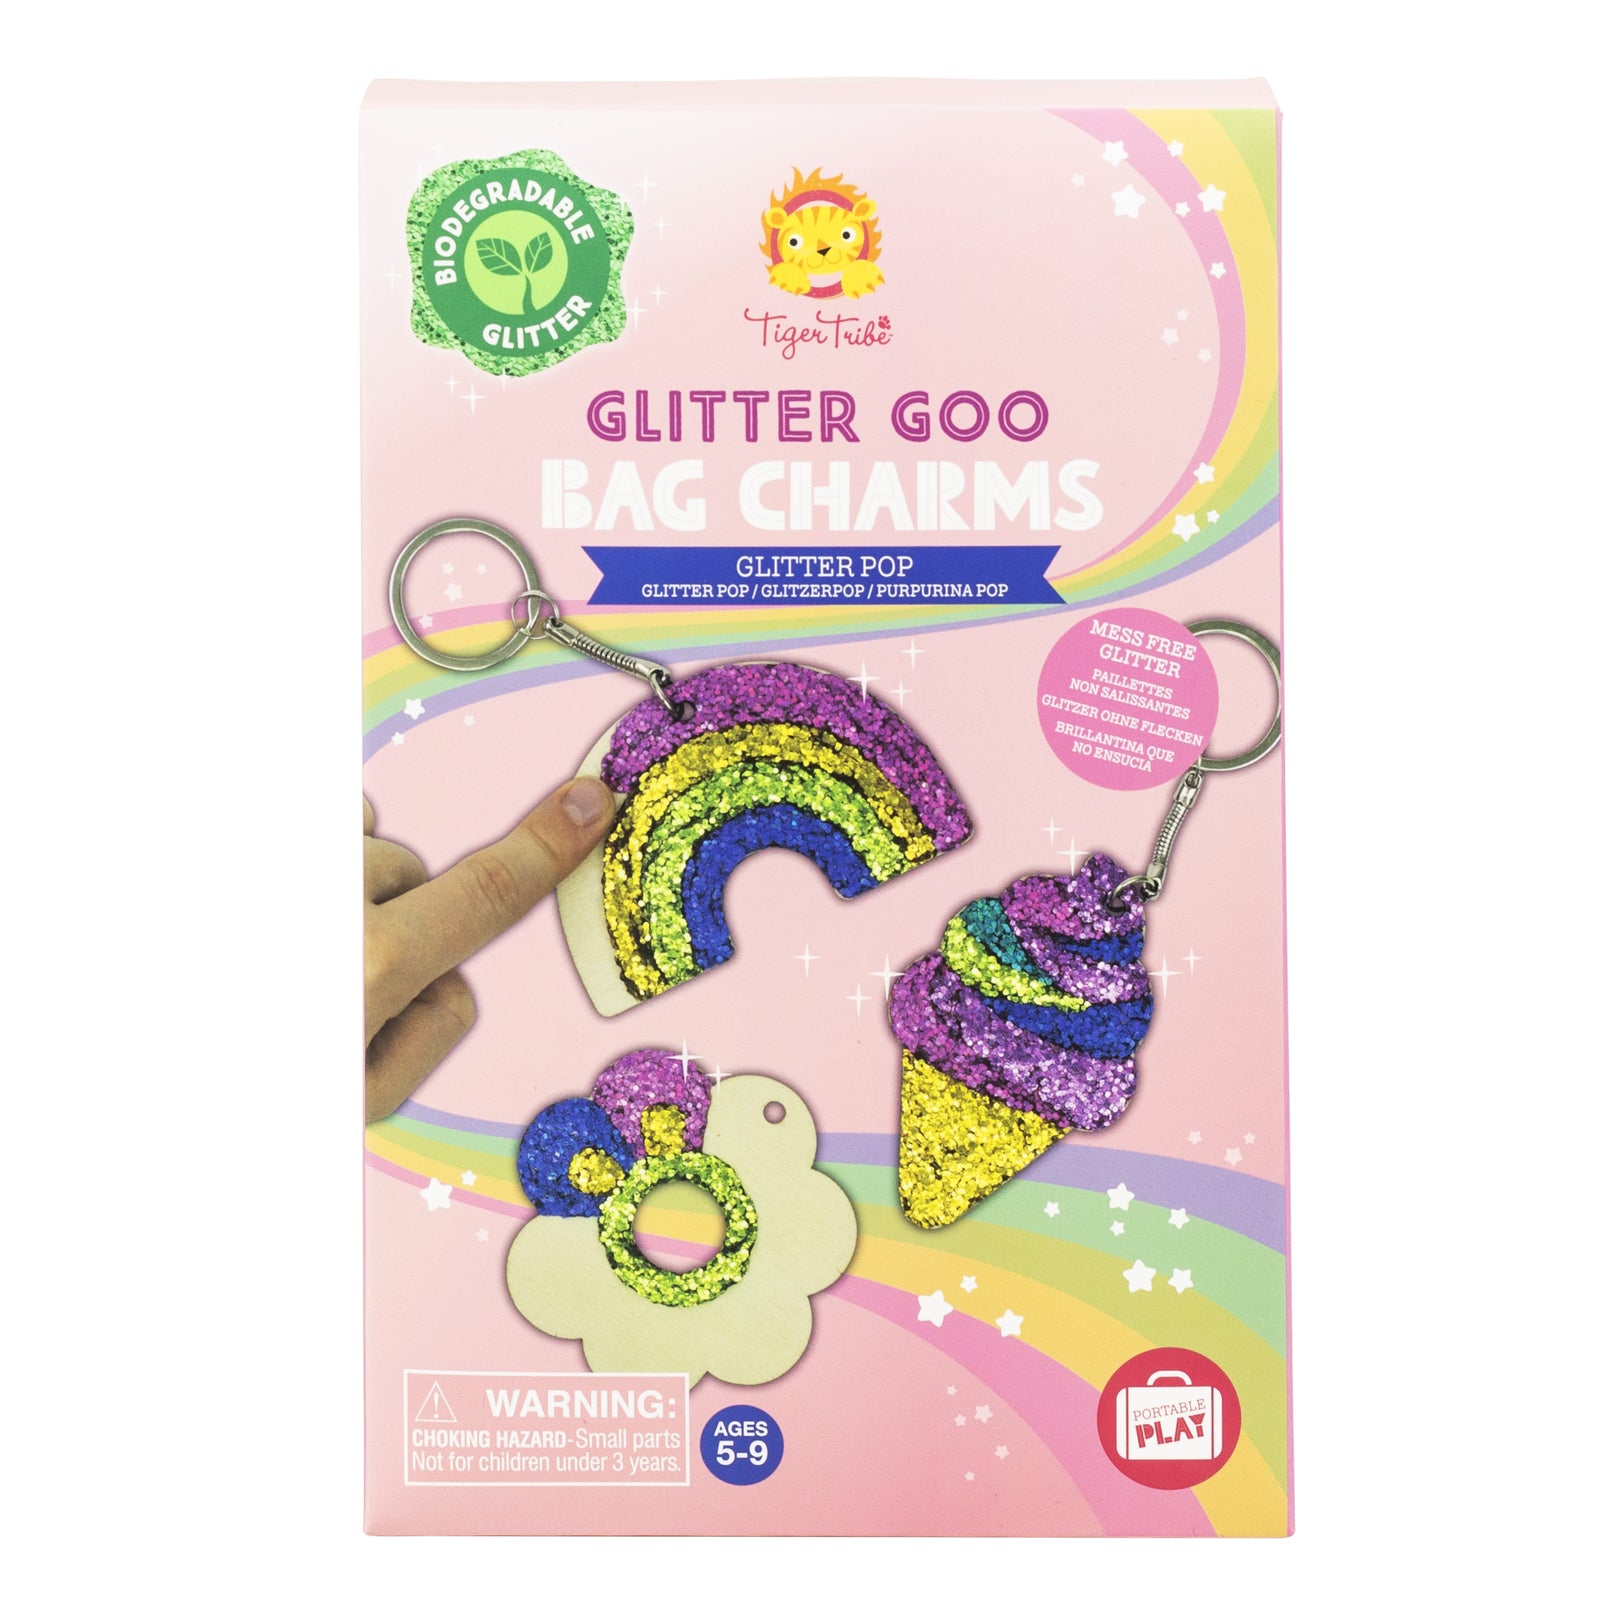 Glitter Goo Bag Charms - Glitter Pop - Toybox Tales